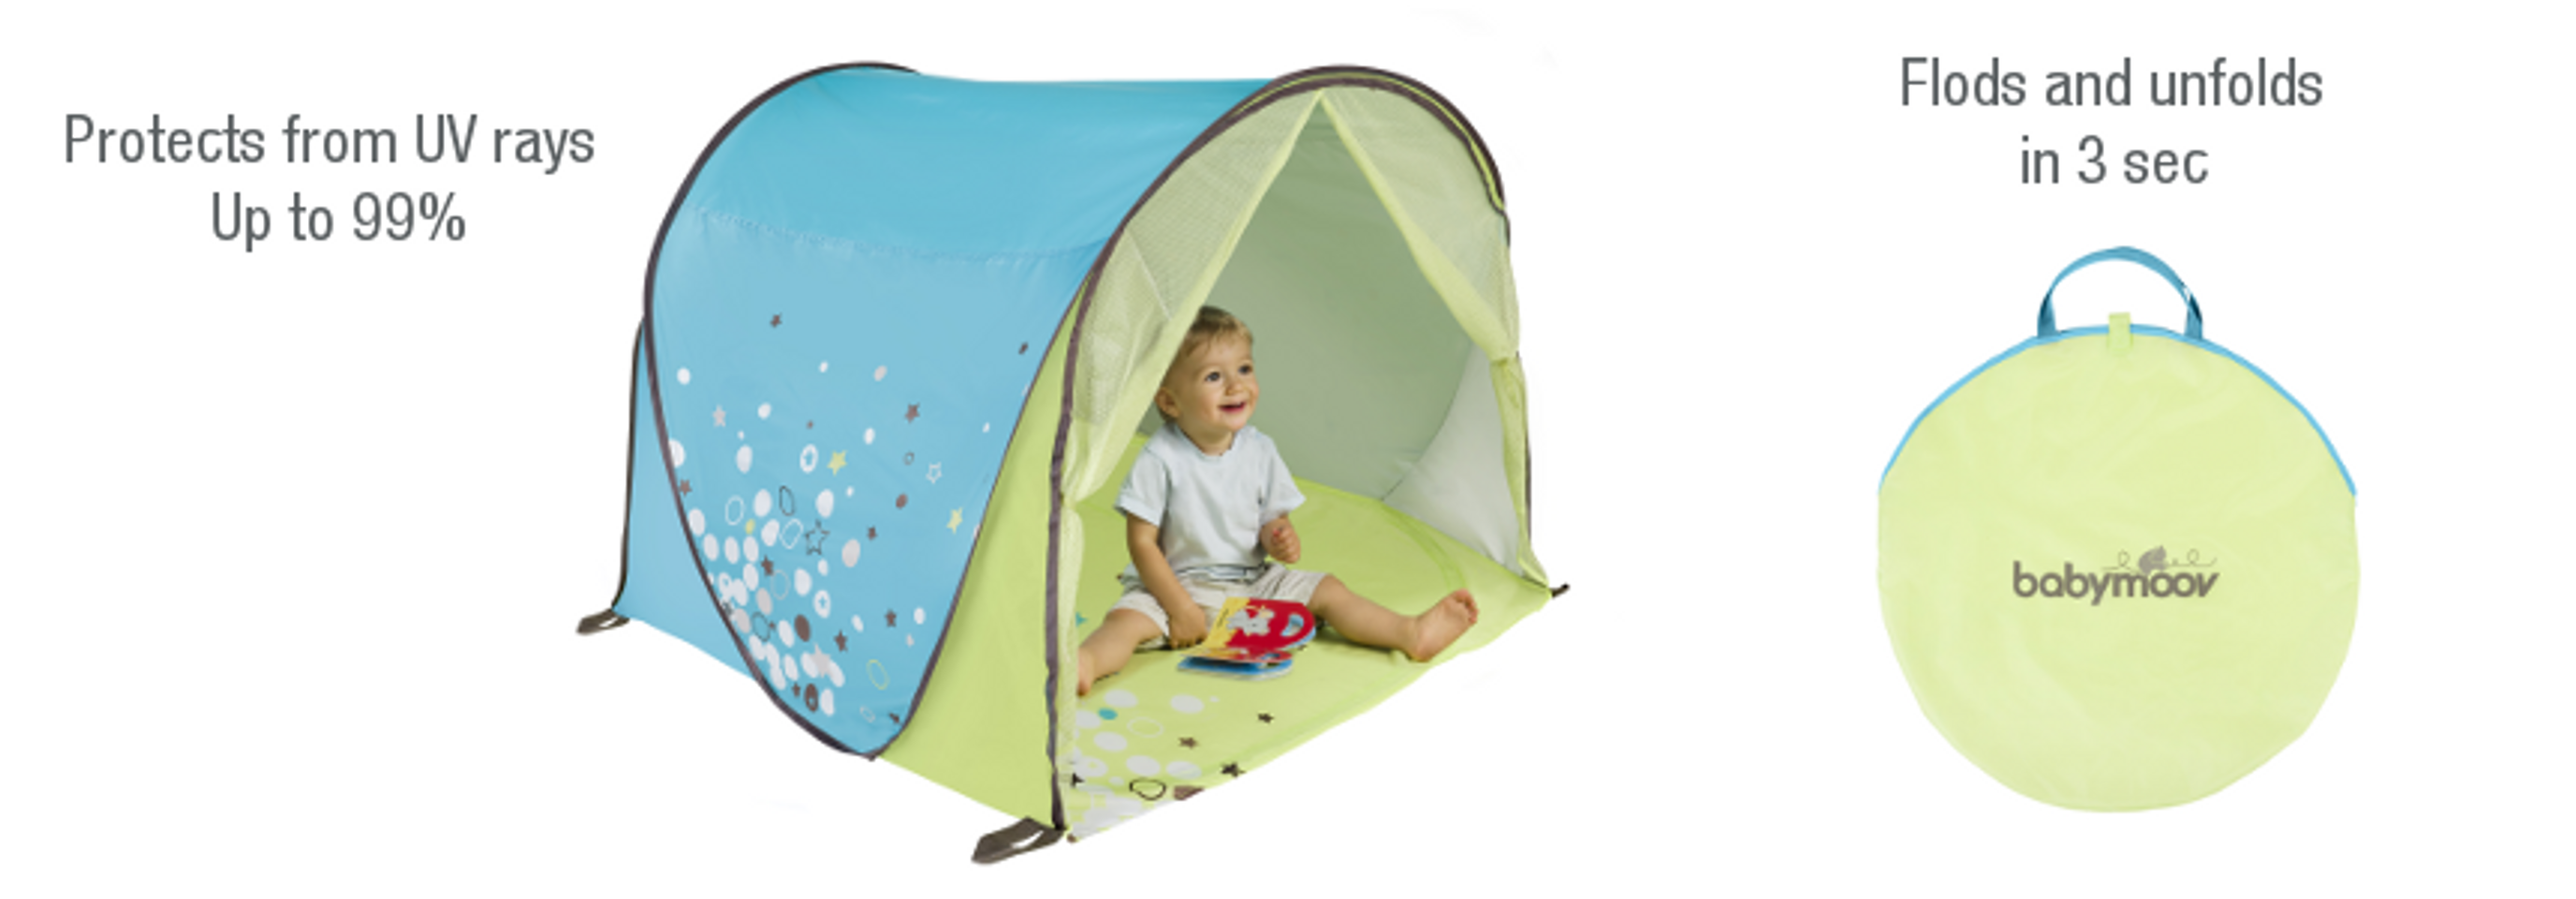 Lều cắm trại cho bé khi gấp gọn trông như 1 chiếc túi xinh xắn, siêu nhẹ, rất tiện để mang đi khắp nơi.